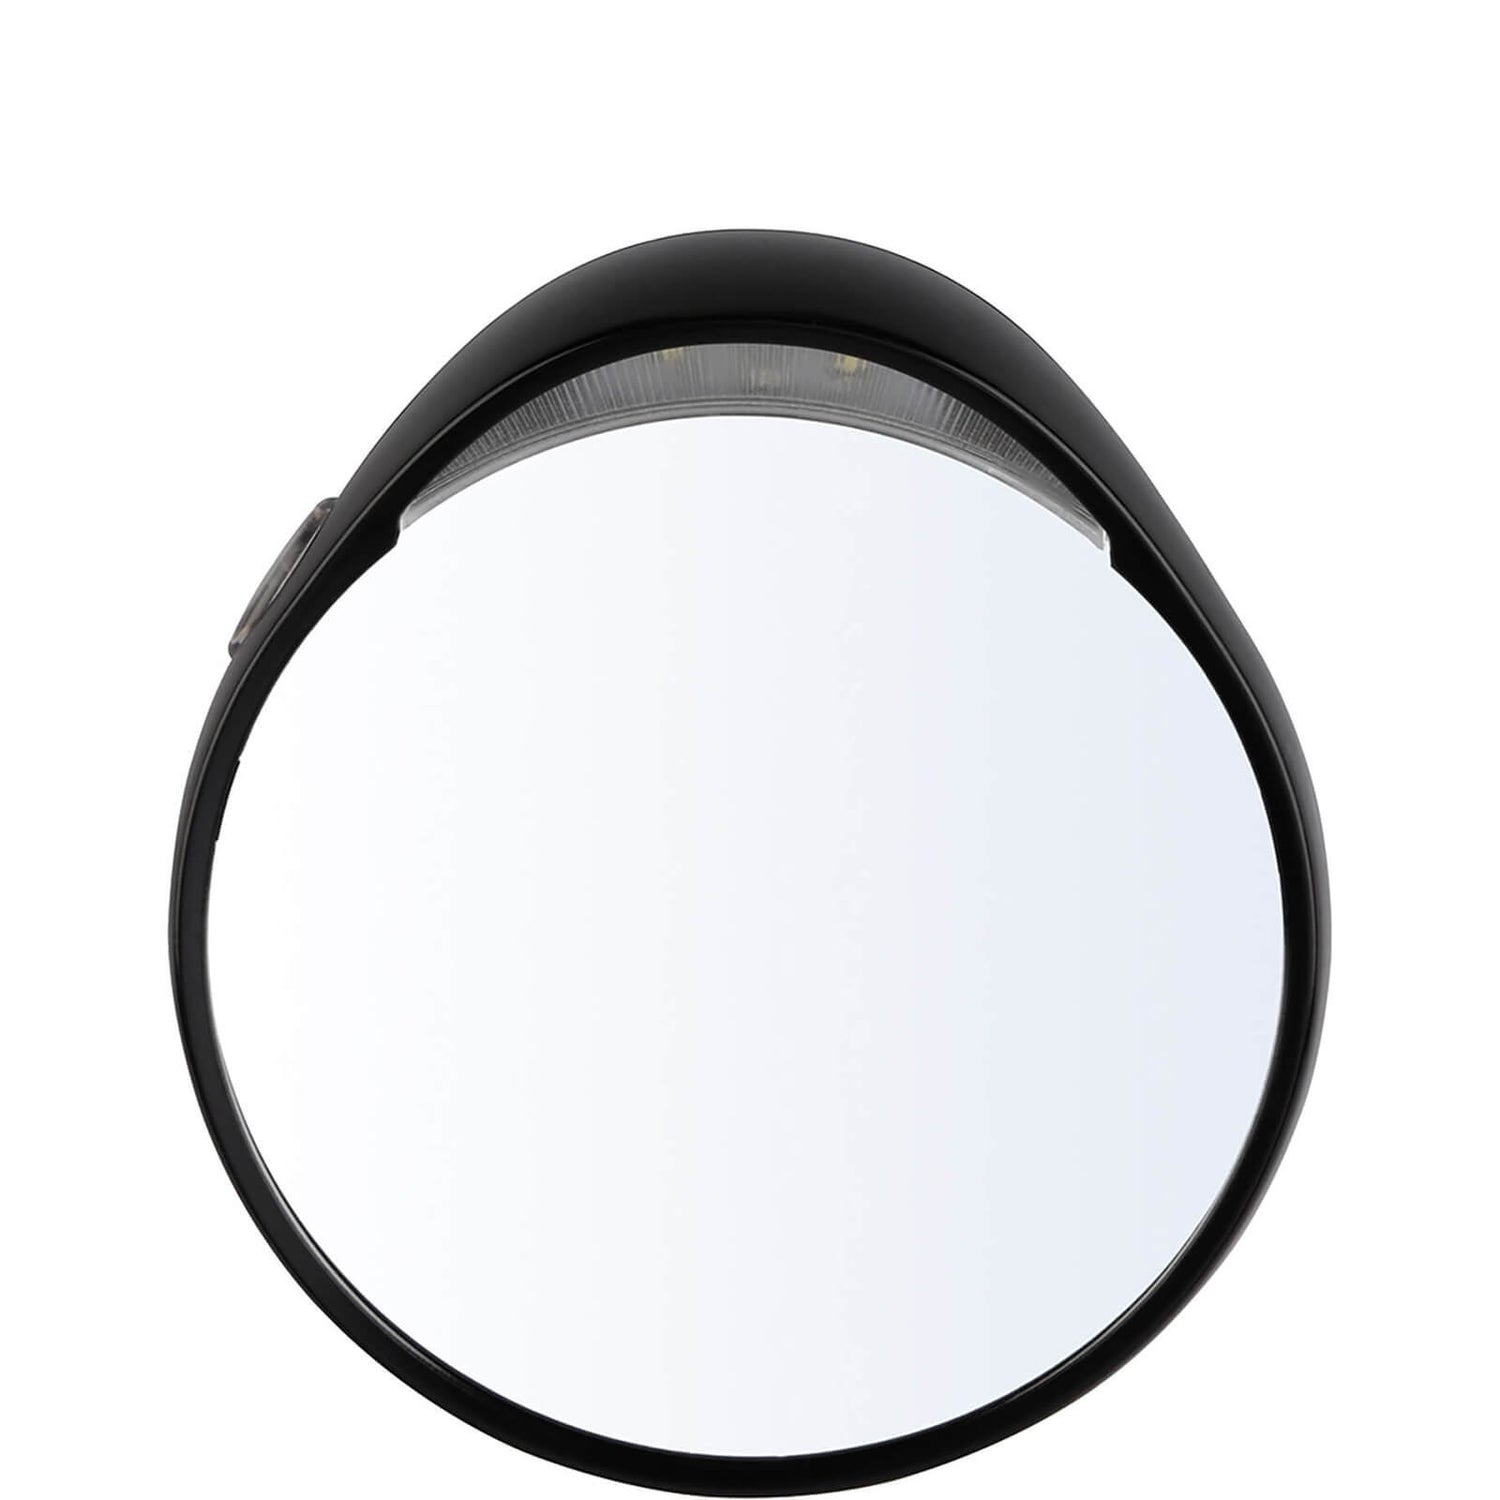 Tweezerman Tweezermate Magnifying Mirror with Light